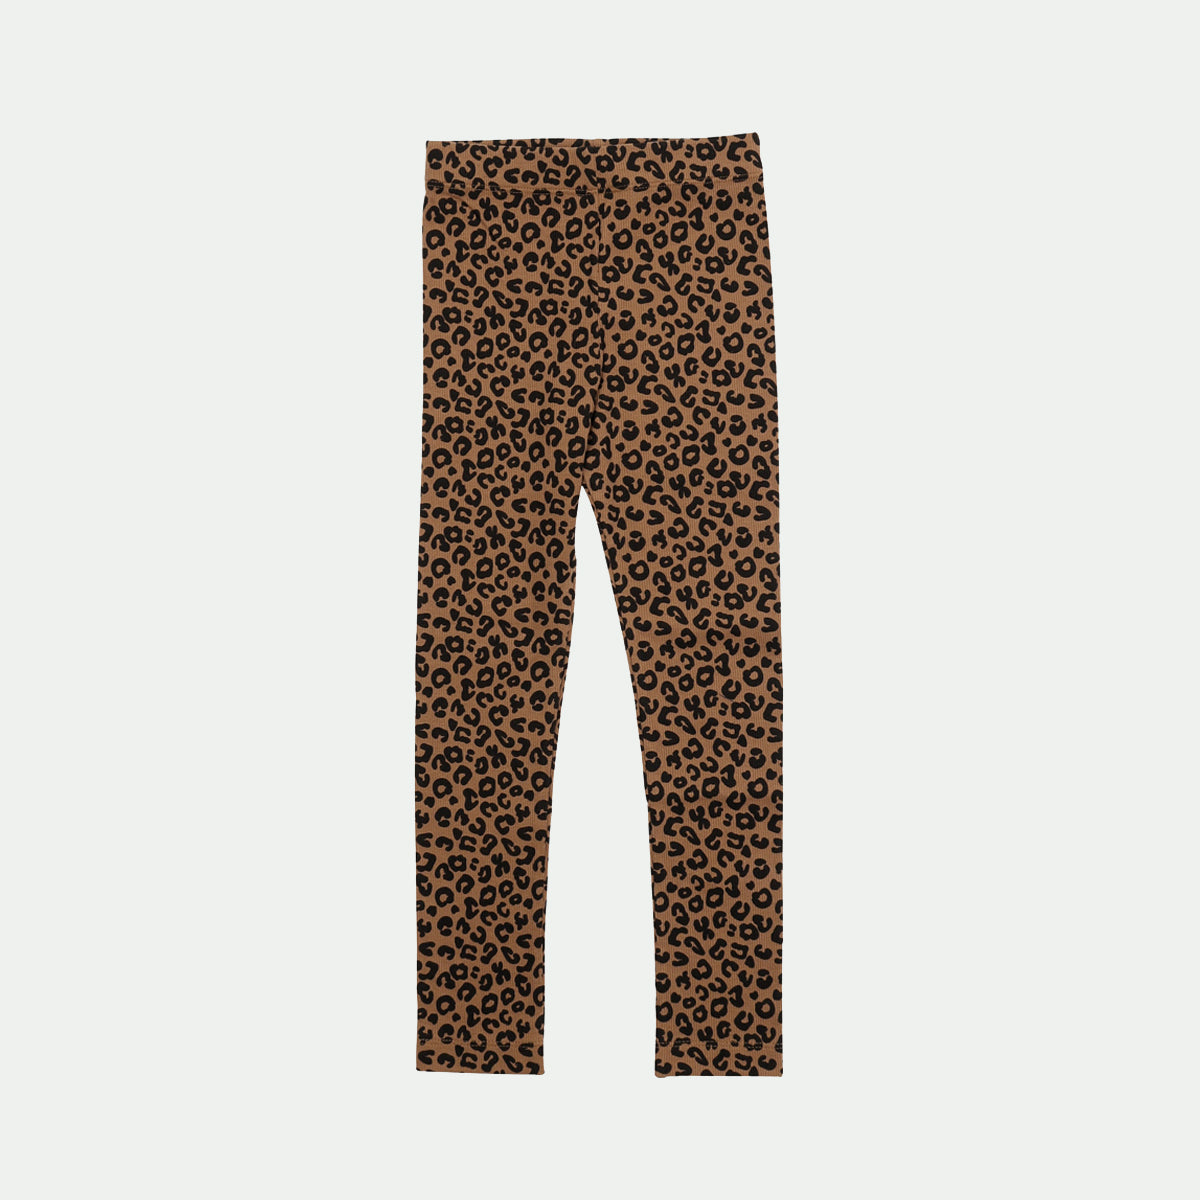 Chocolate leopard legging